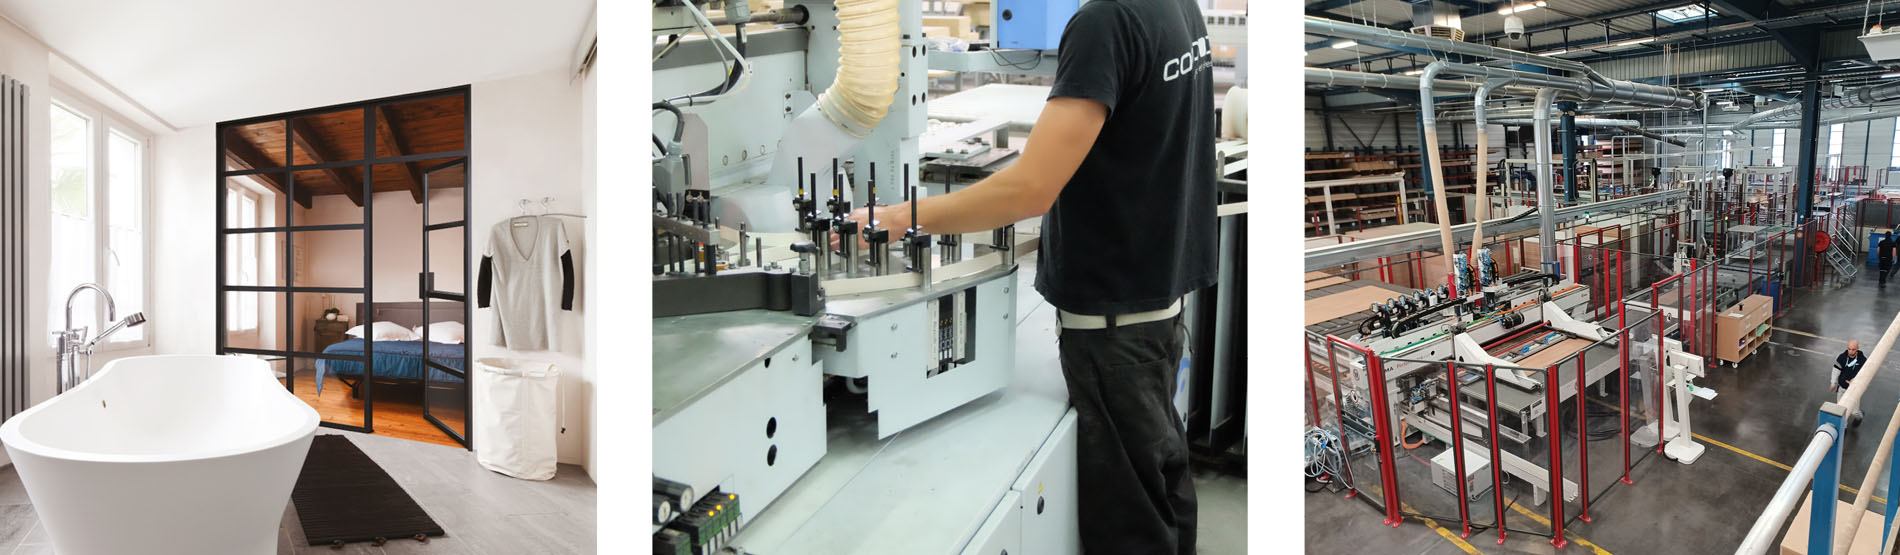 Recrutement: Technicien de maintenance industrielle F/H chez Coulidoor à Lyon